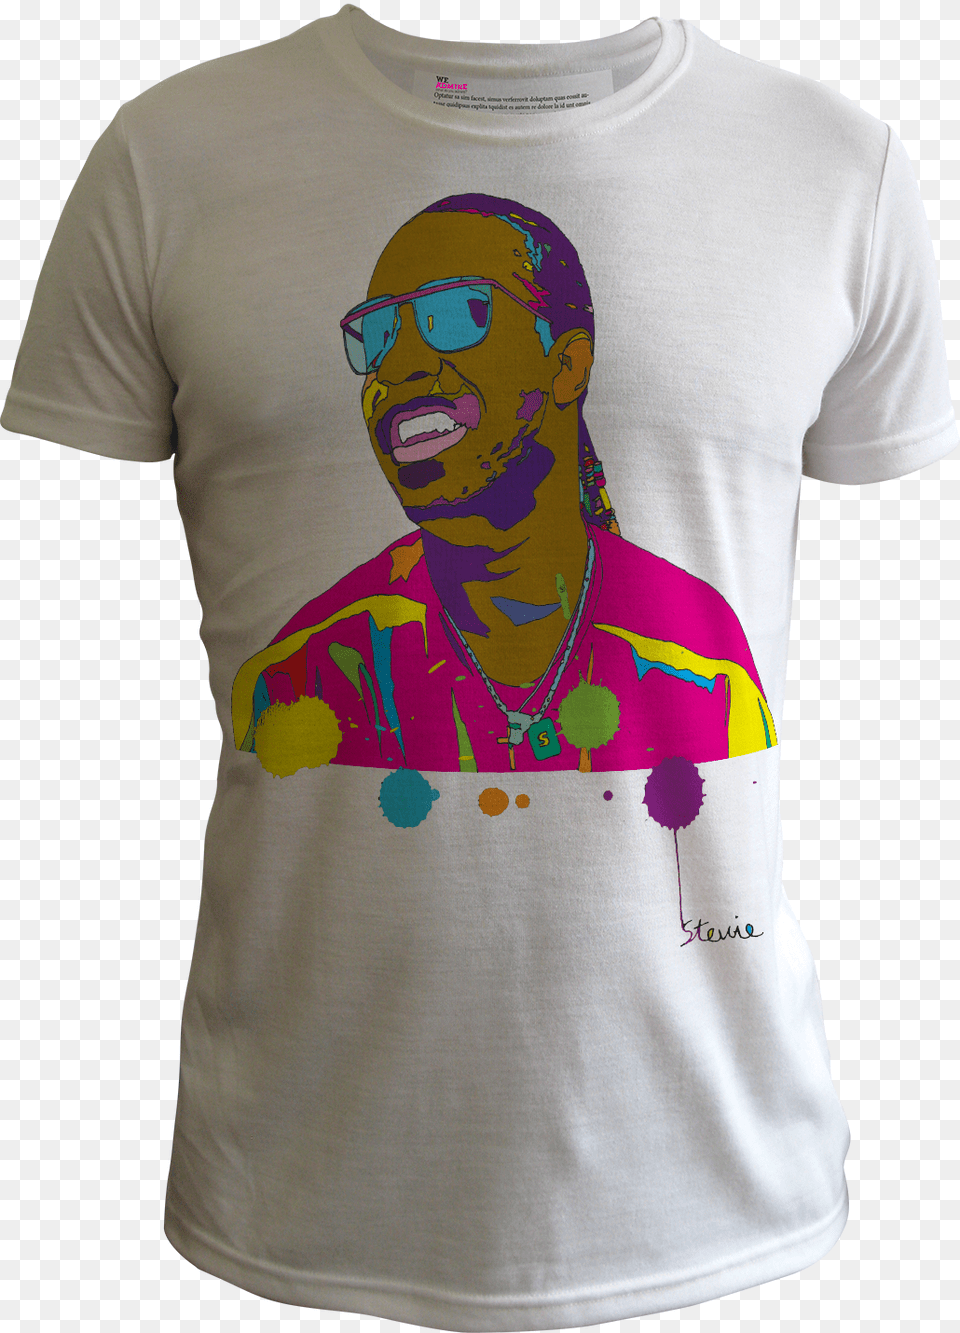 Stevie Wonder Geraint Thomas T Shirt, T-shirt, Applique, Clothing, Pattern Png Image